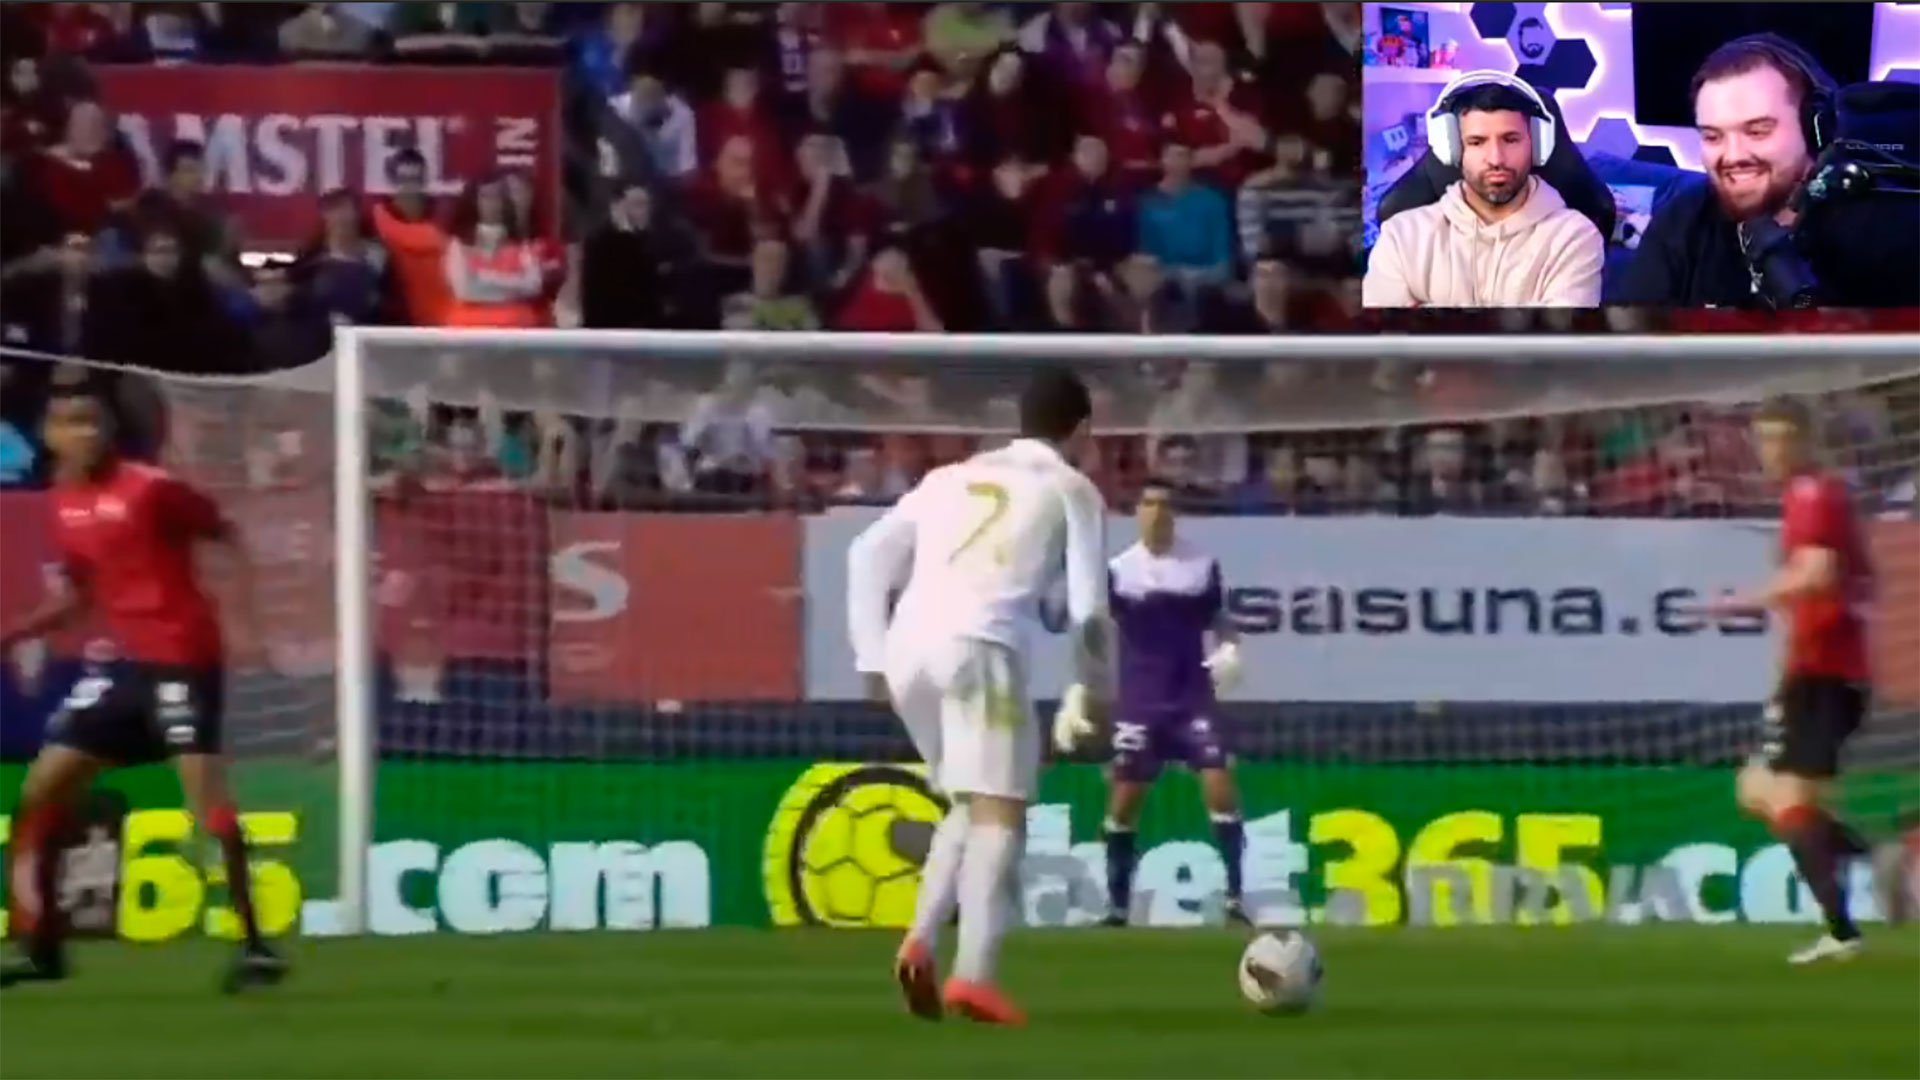 Ibai obligó a Sergio Agüero a ver un video de goles de Cristiano Ronaldo: “Todos de tiro libre y de pedo”